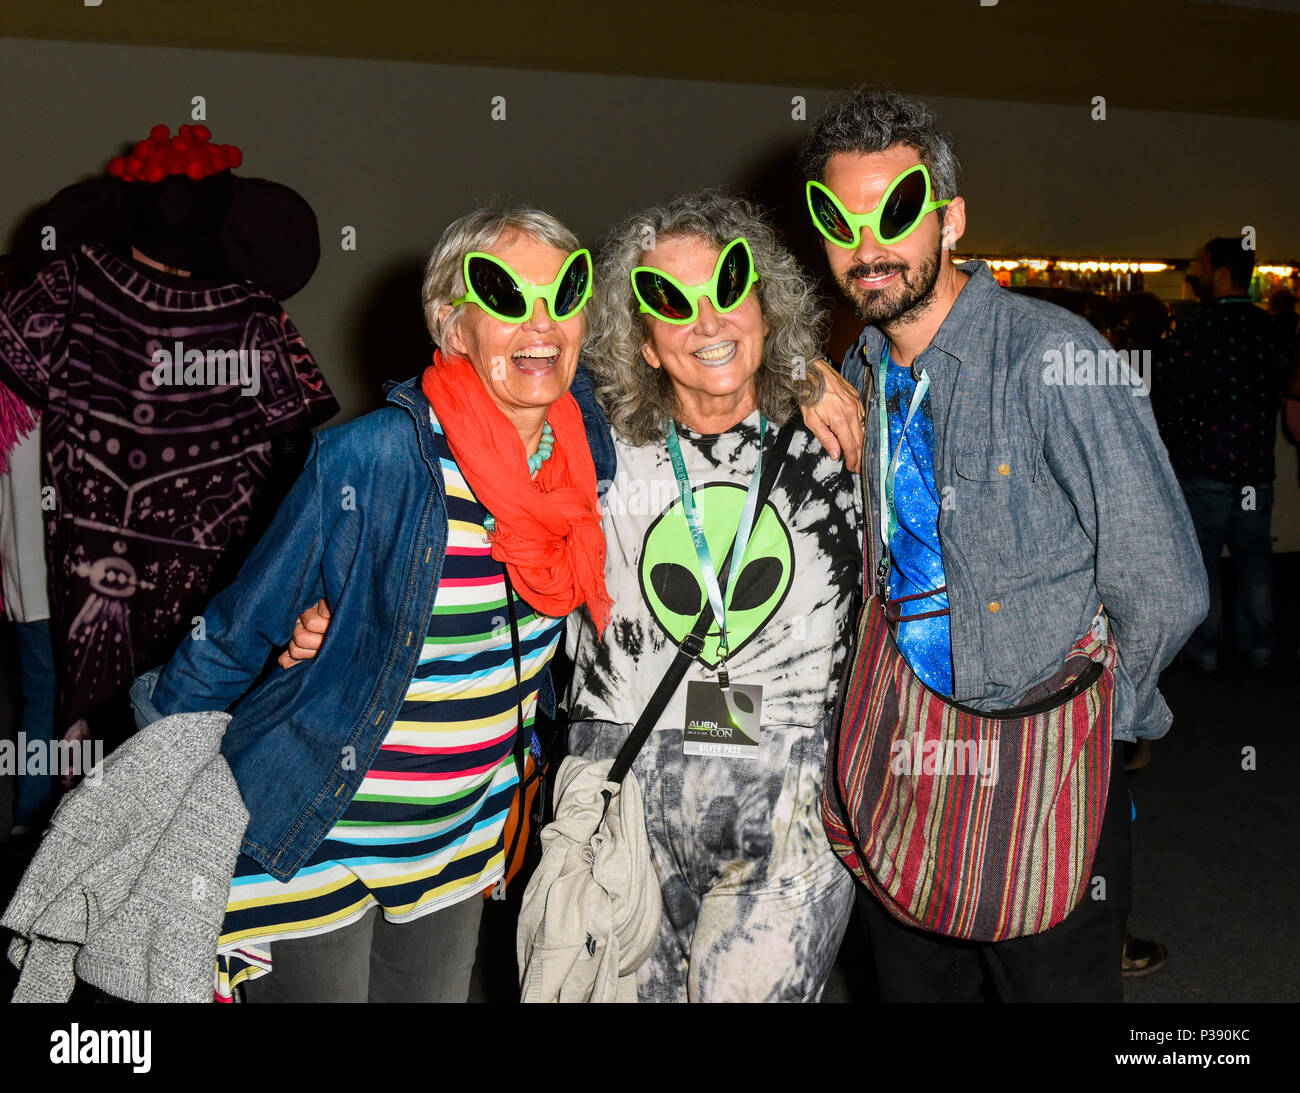 Pasadena, Kalifornien, 16. Juni 2018, Alien Con Tag 2, Teilnehmer, gekleidet in Kostümen bei der Partei. Credit: Ken Howard Bilder/Alamy Leben Nachrichten. Stockfoto